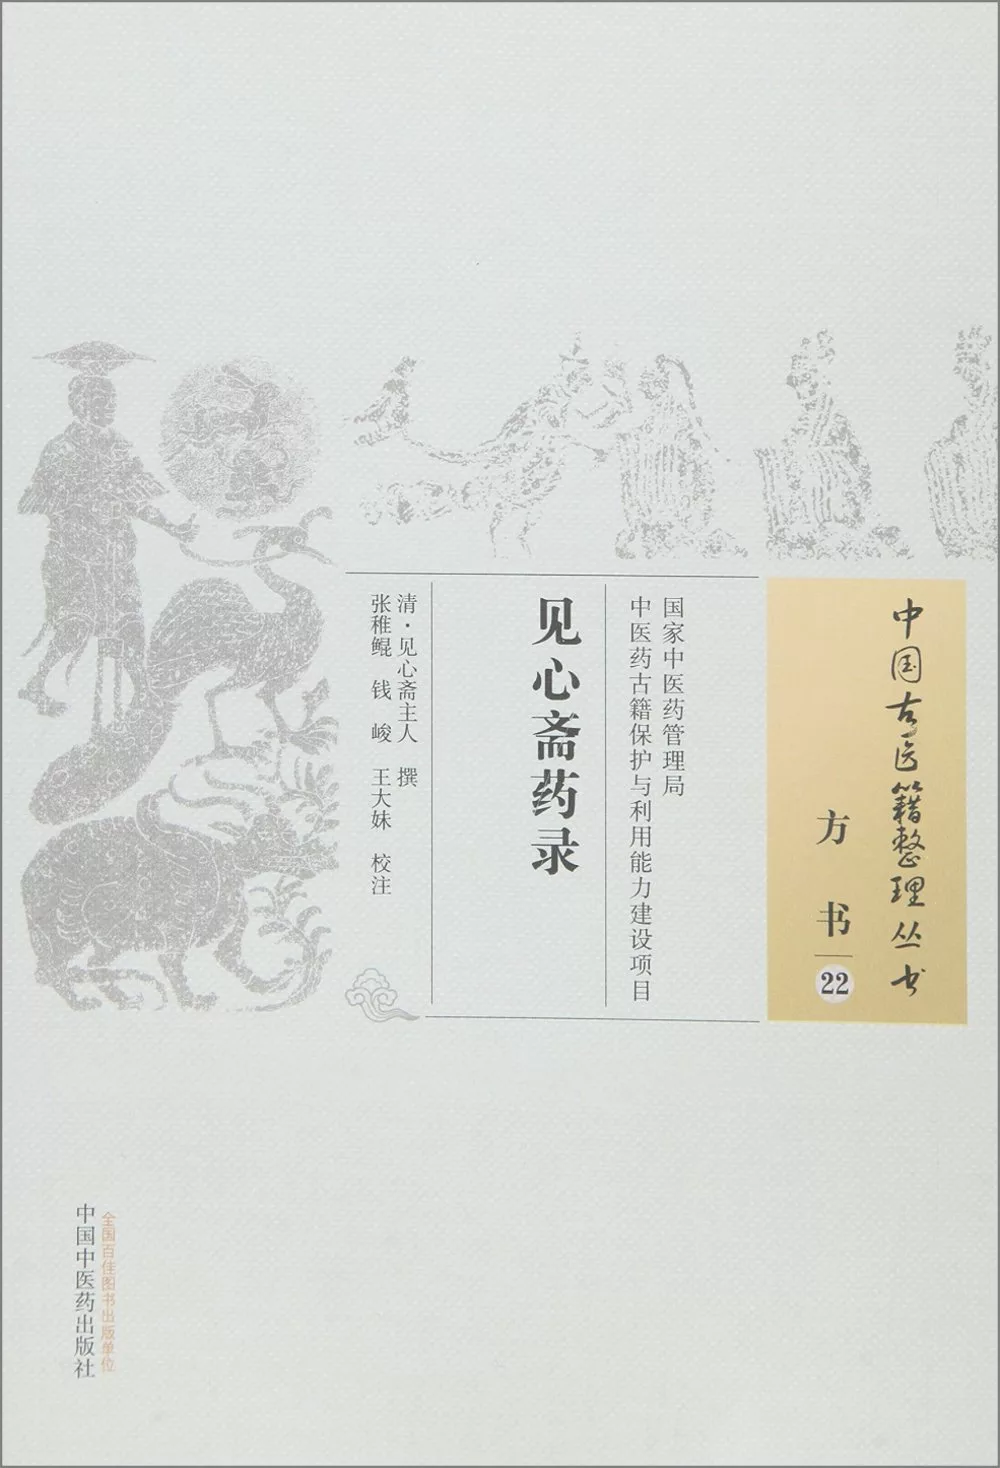 中國古醫籍整理叢書方書22：見心齋藥錄